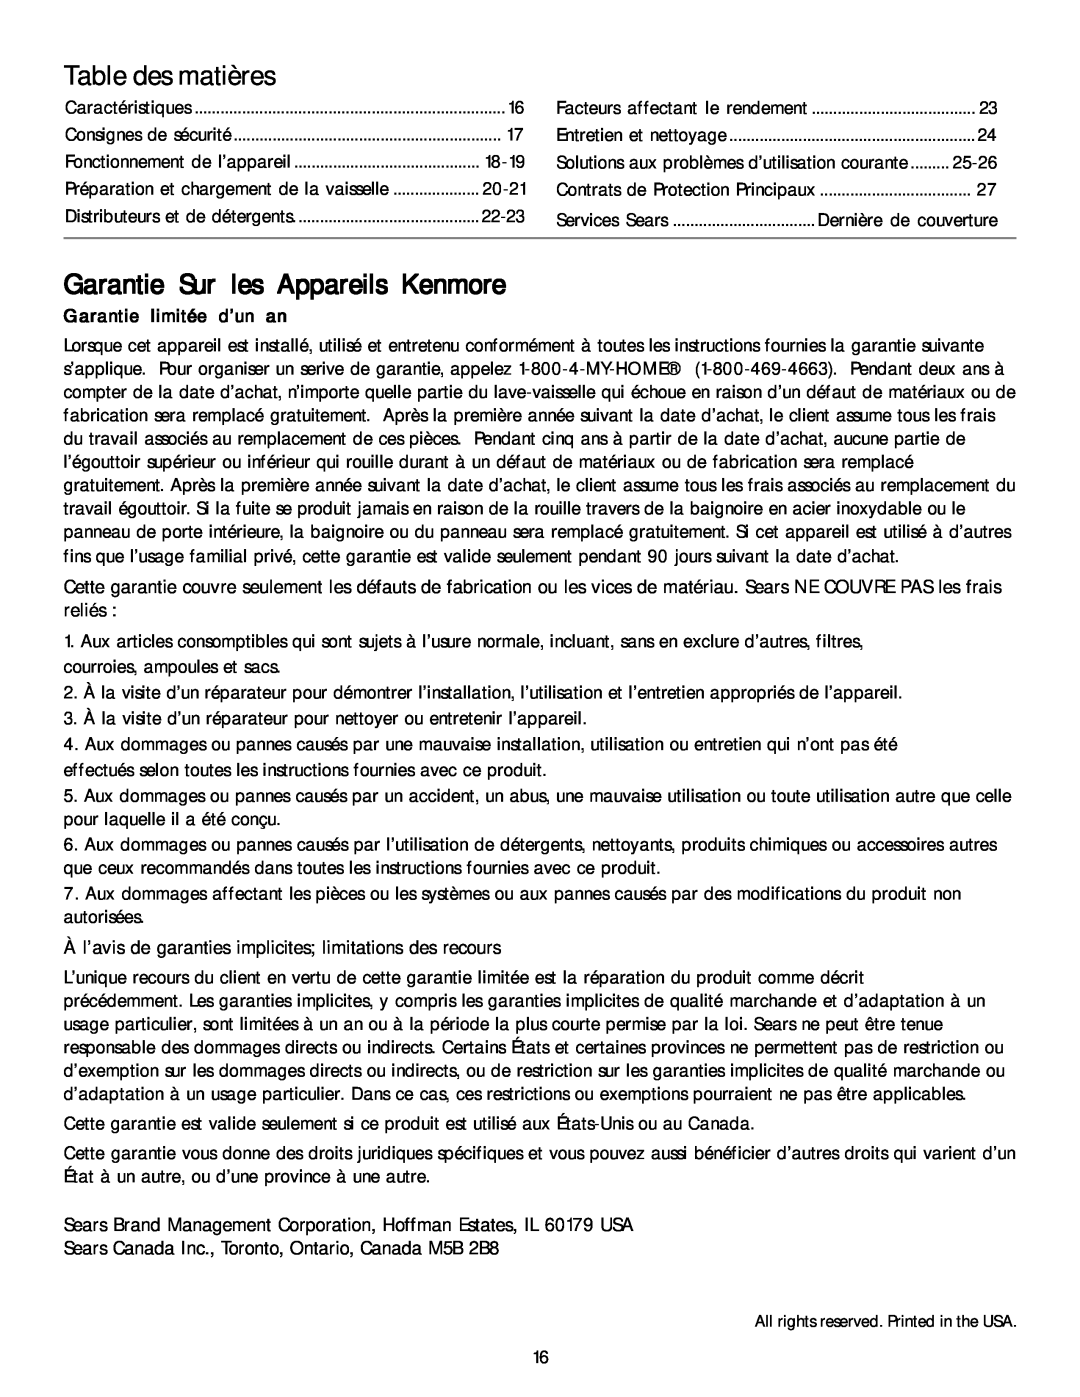 Kenmore 587.1468 manual Table des matières, Garantie Sur les Appareils Kenmore, Garantie limitée d’un an 